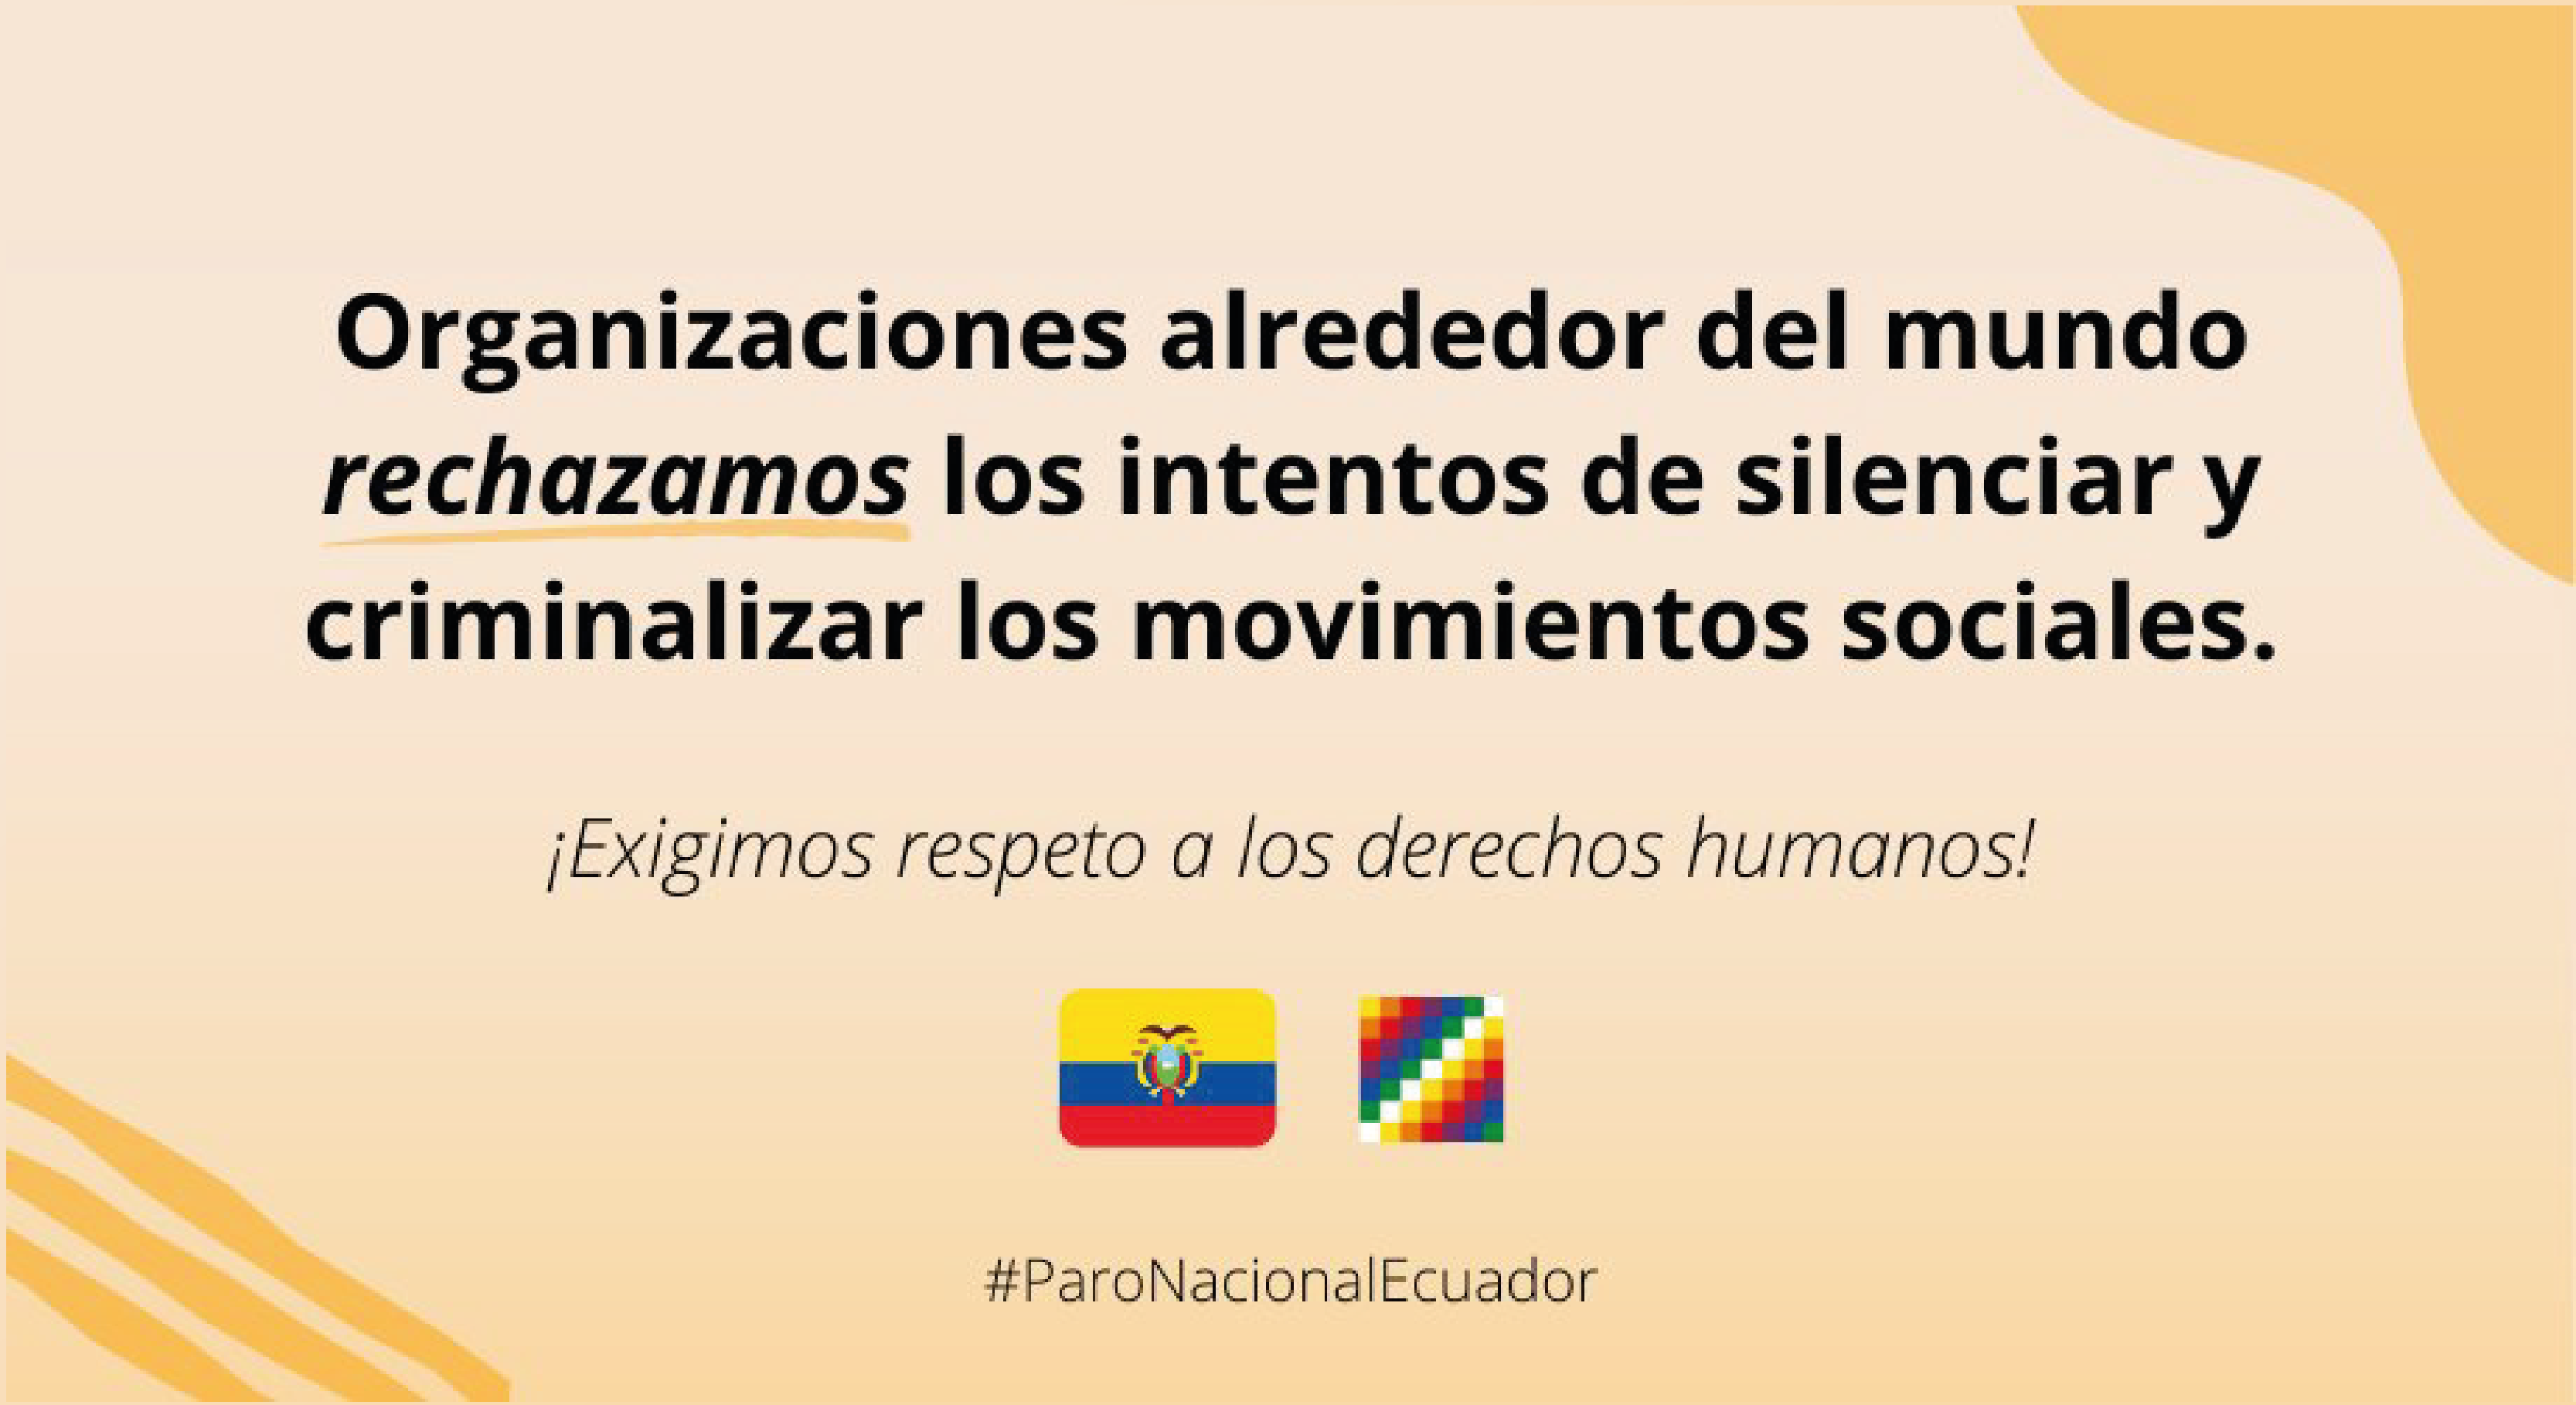 Organizaciones de la sociedad civil rechazan intentos de silenciar y criminalizar movimientos sociales en el contexto de protesta en Ecuador y exigen que se respeten los derechos humanos